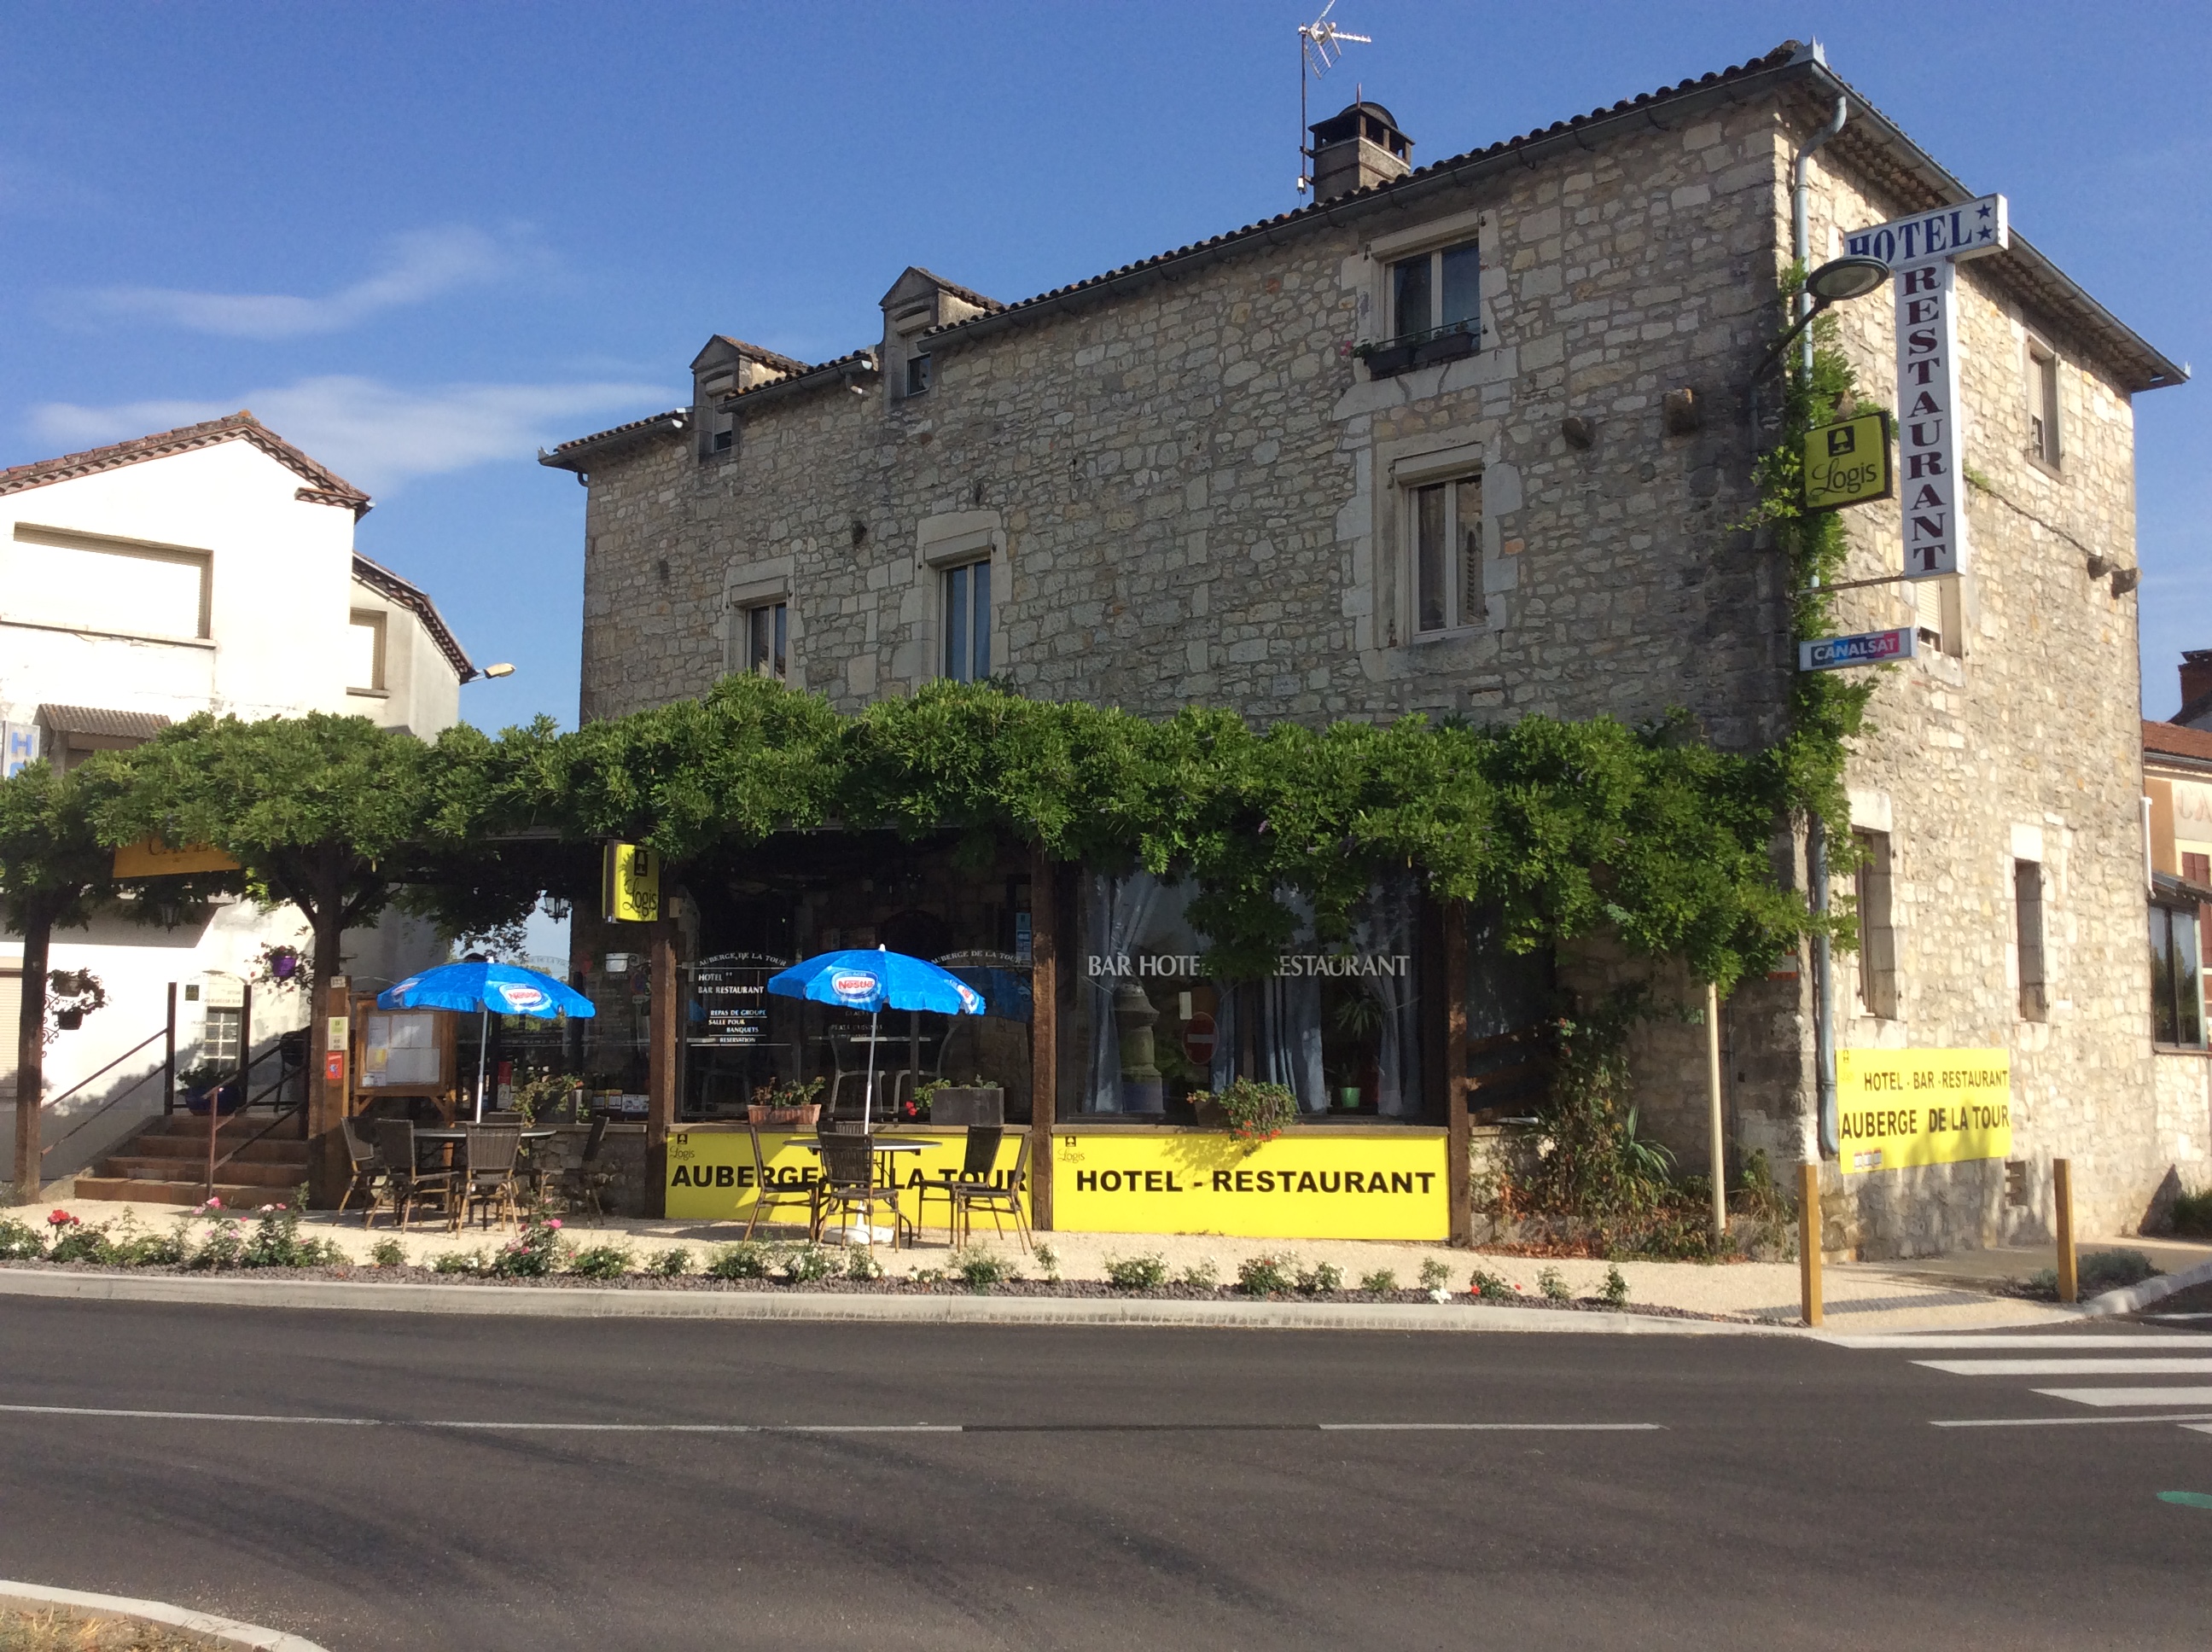 Hôtel-Restaurant Auberge de la Tour  France Auvergne-Rhône-Alpes Drôme Sauzet 26740